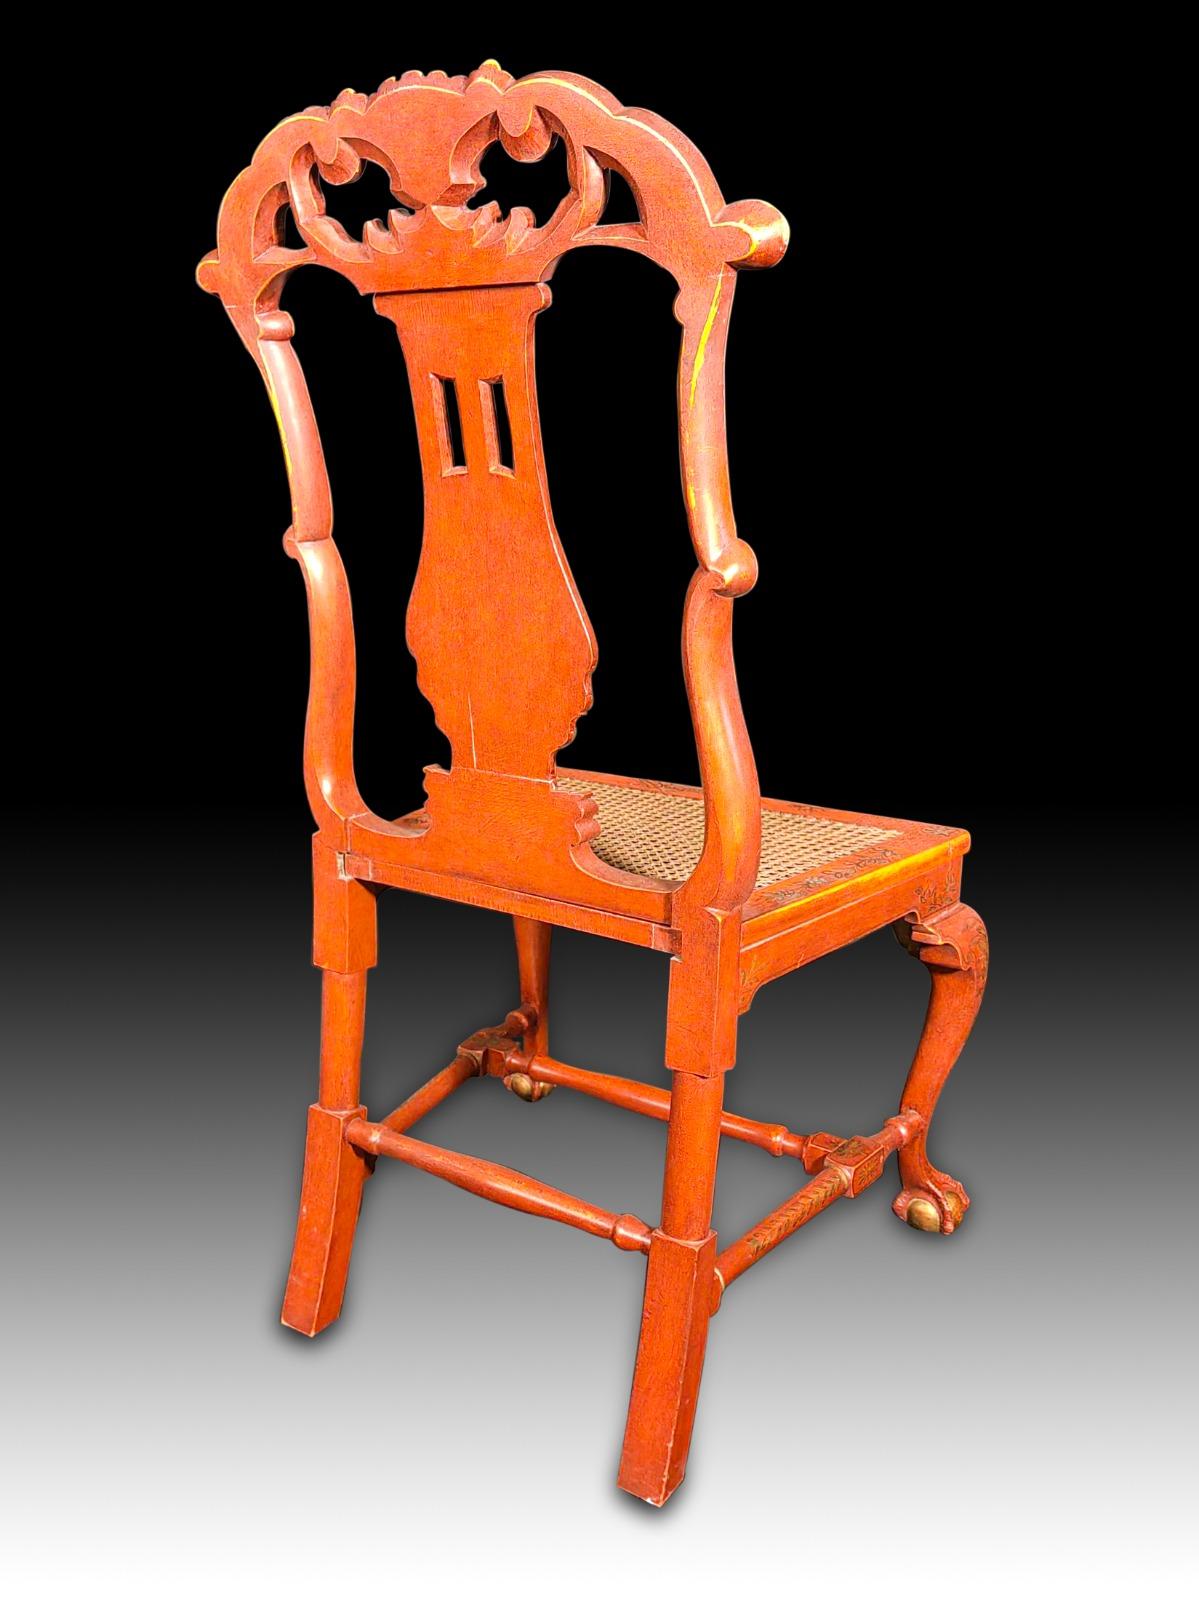 Six chaises de style George II chaises d'appoint japonaises rouges et or, chacune décorée de scènes de chinoiserie d'un personnage courtois, sur des pieds arqués réunis par des brancards moulés et des pieds coussinés, le décor rafraîchi. Fin xixe